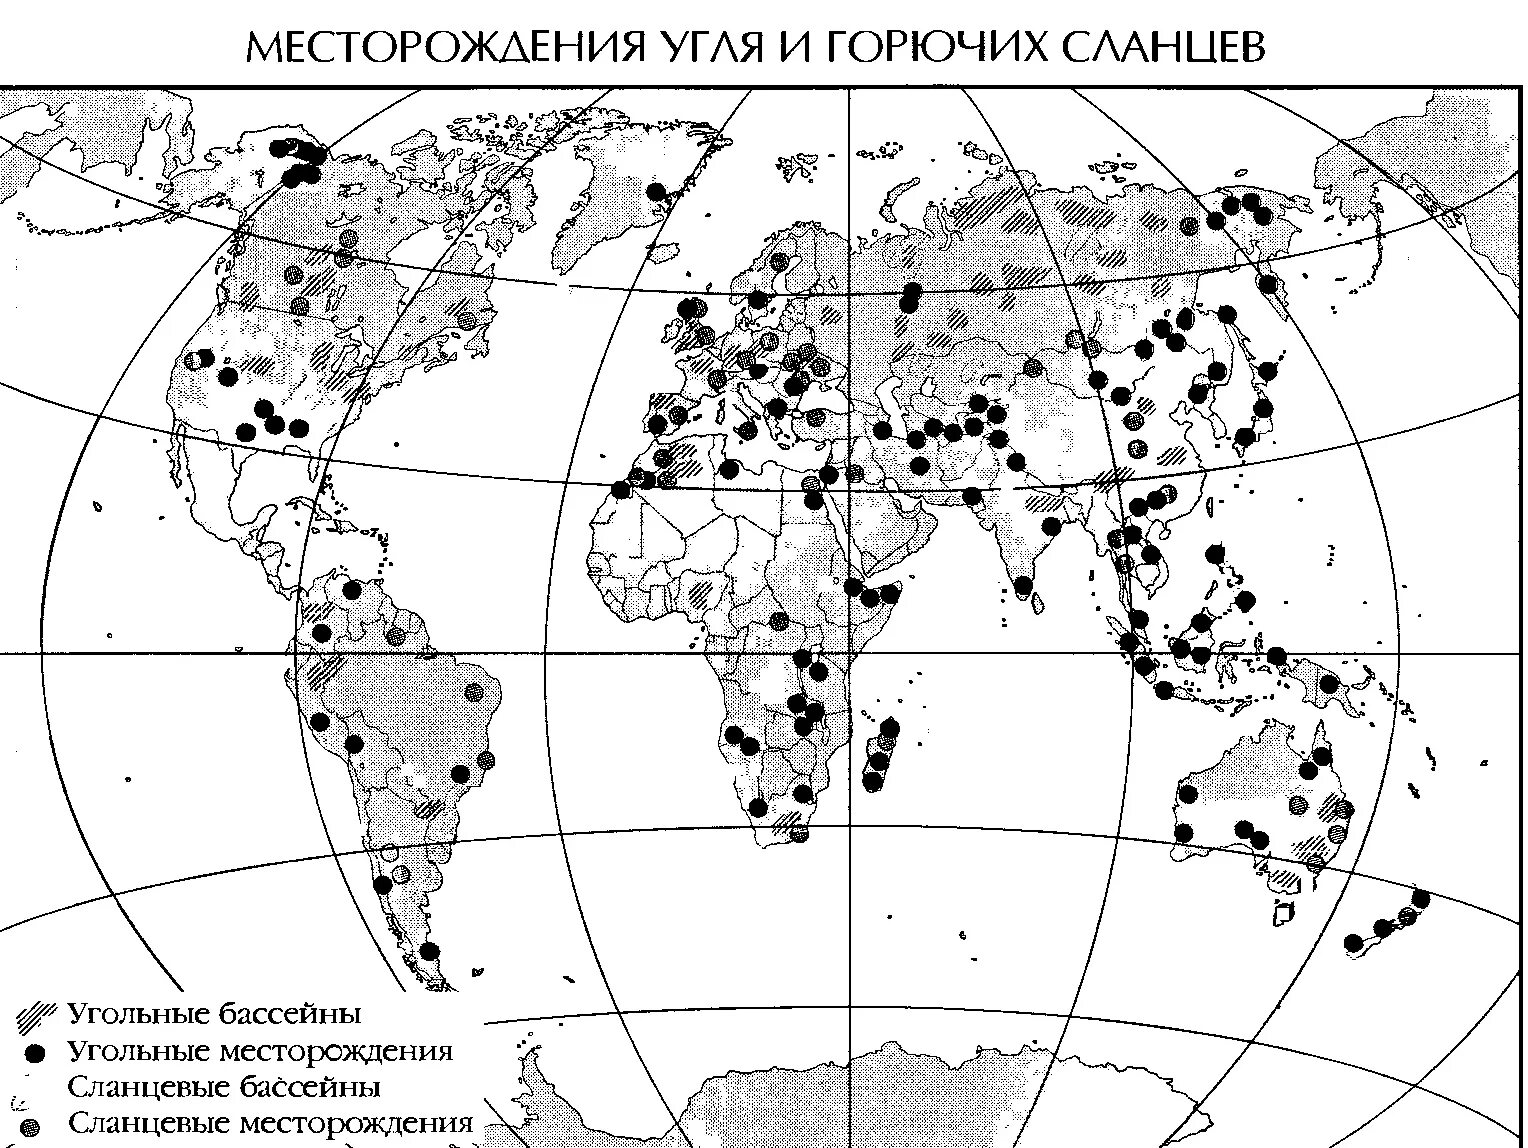 Запасы горючих сланцев. Крупнейшие месторождения нефти и угля в России на карте. Крупные месторождения каменного угля в России на карте.